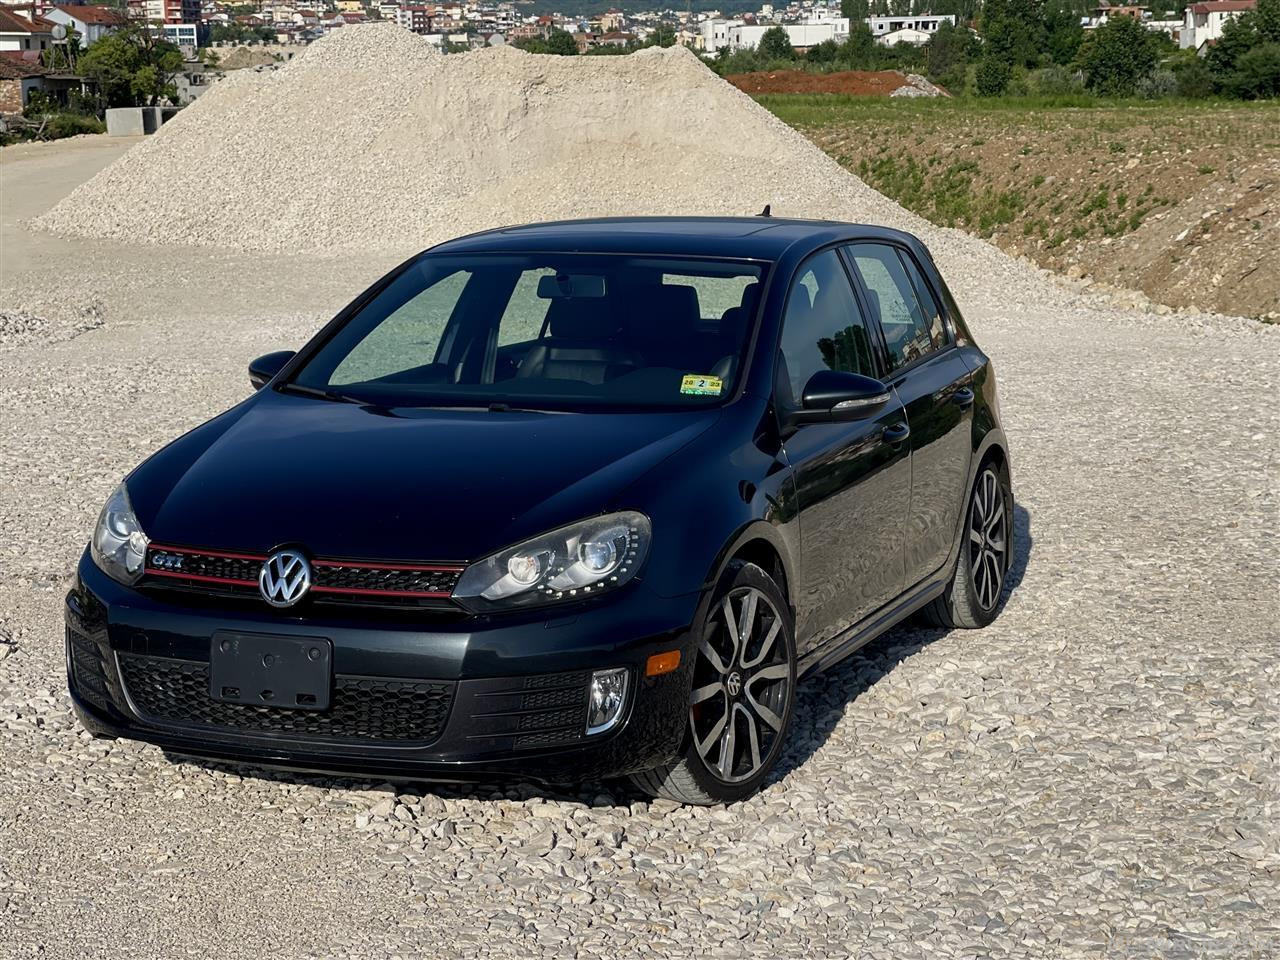 VW Golf 2.0 GTI Autobahnn turbocharged 